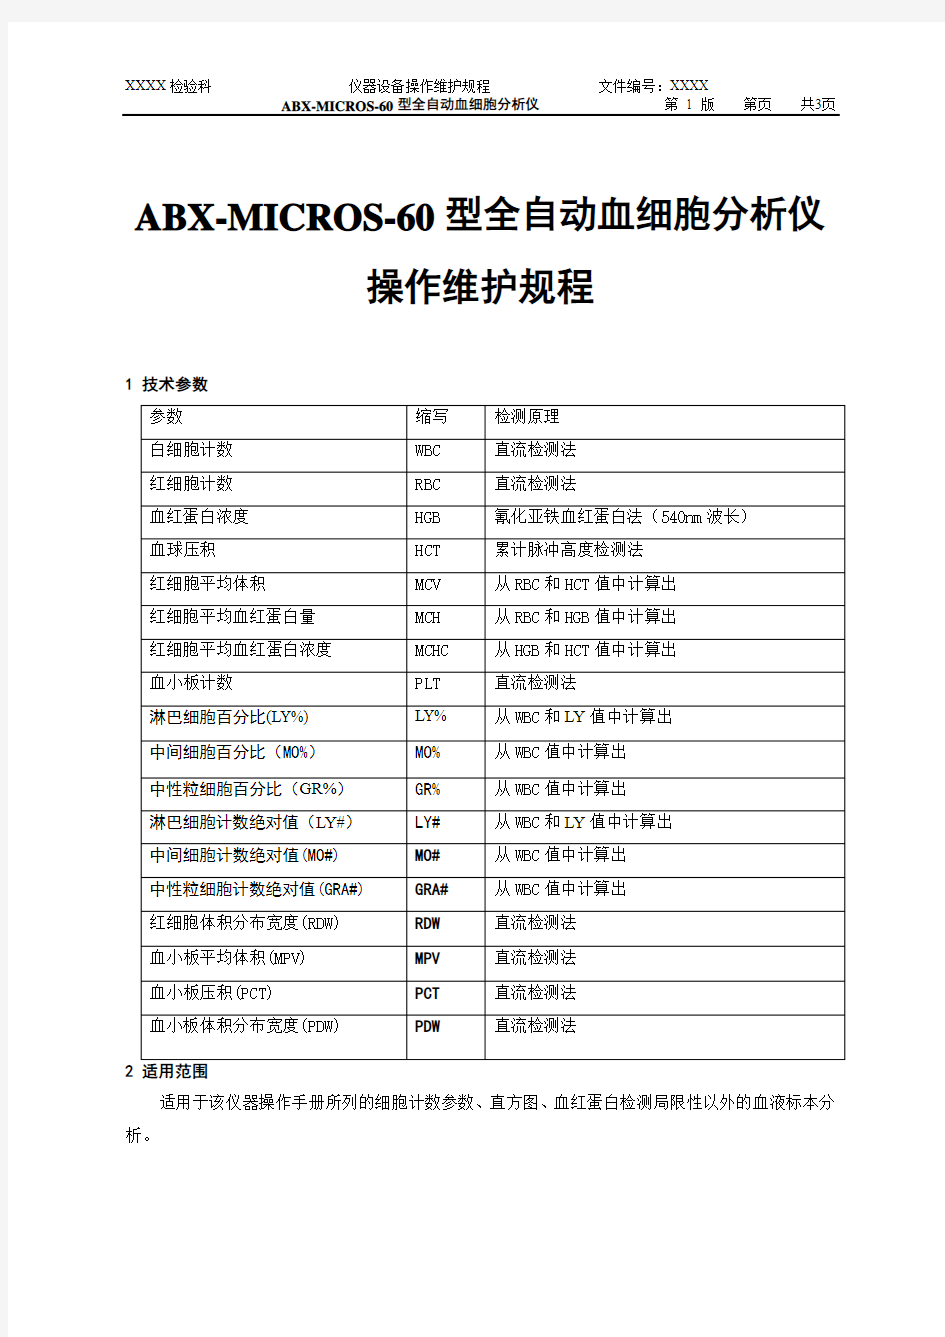 ABX-MICROS-60型全自动血细胞分析仪